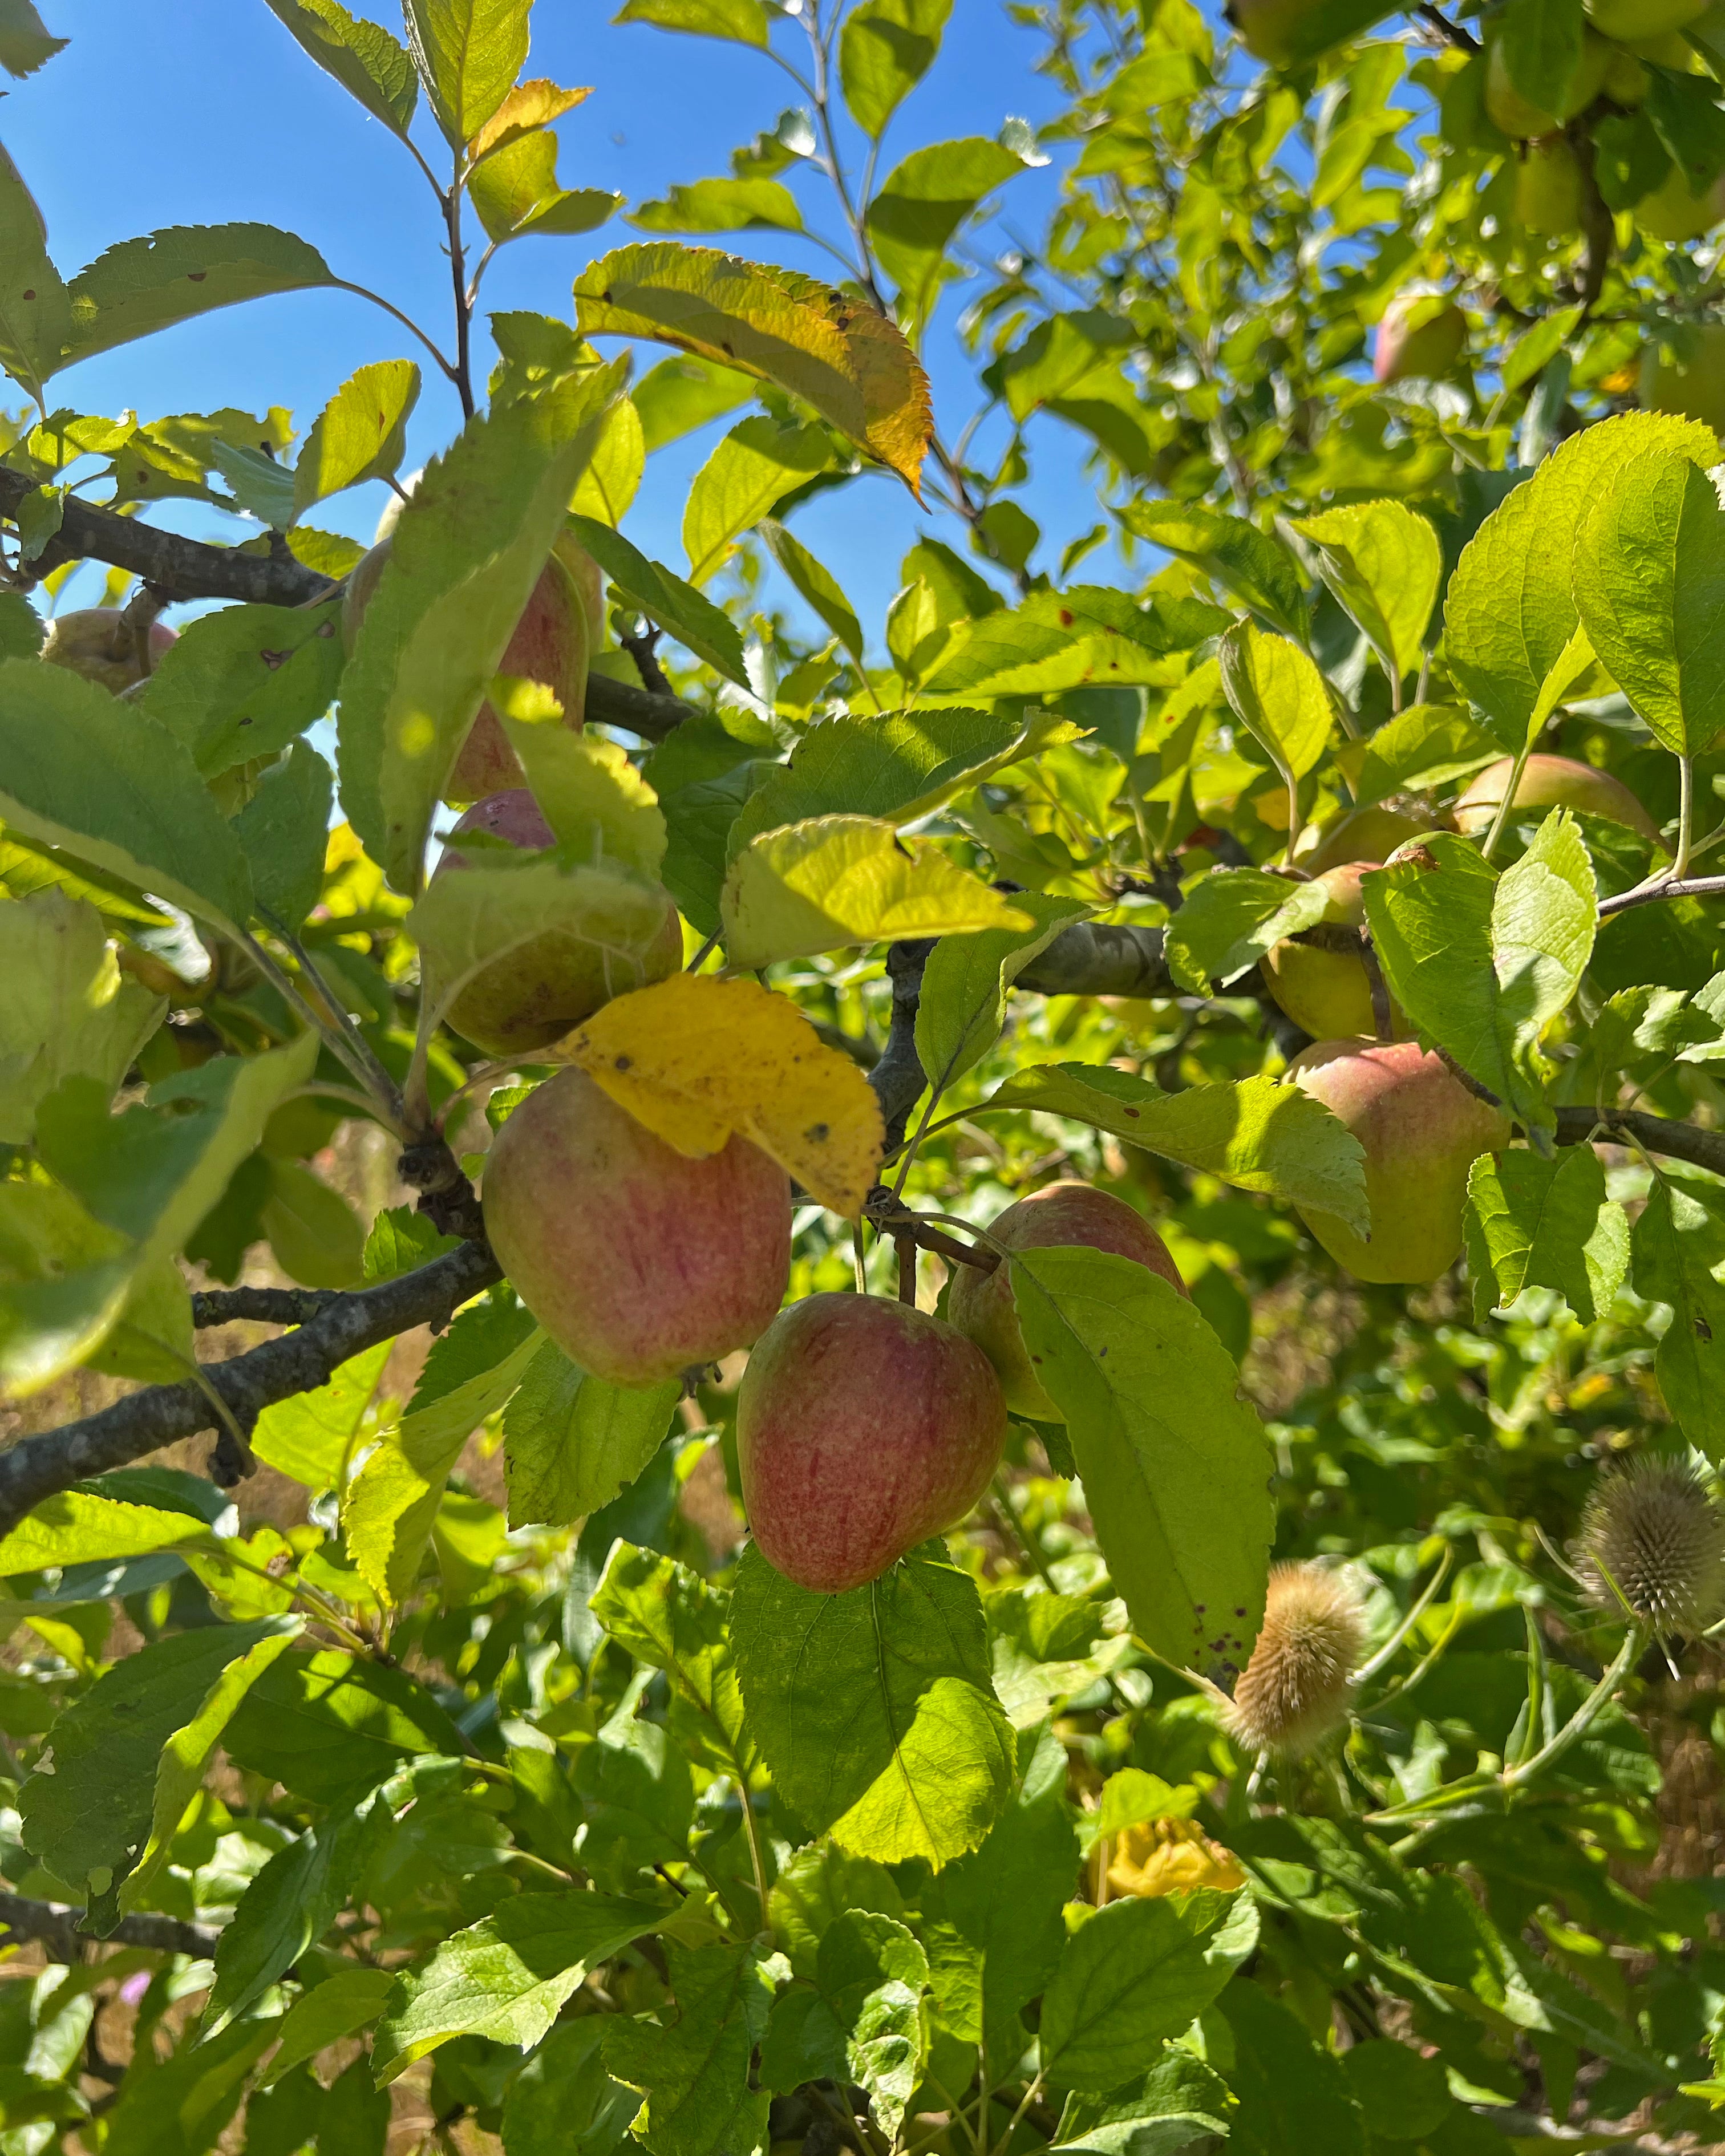 local norfolk heritage varieties of apples sustainable grown 